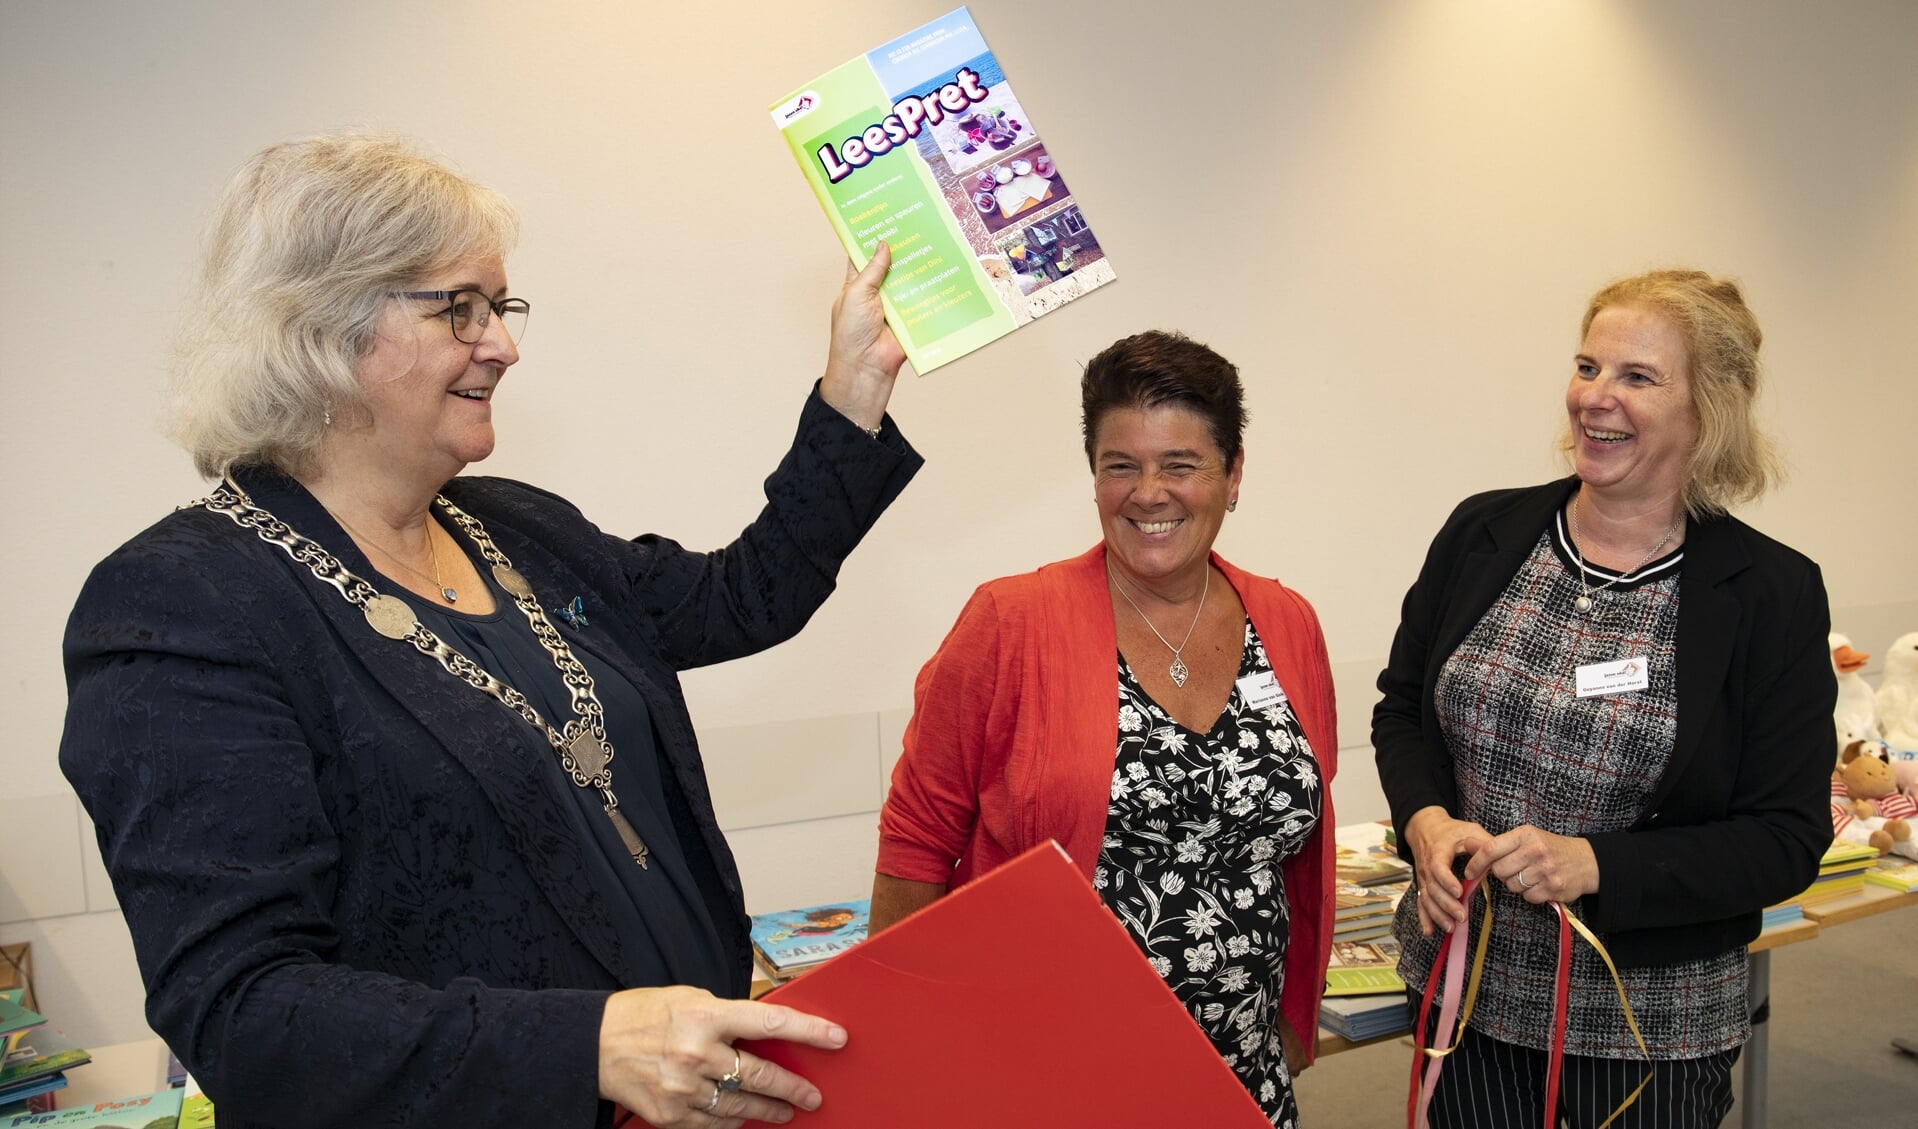 De burgemeester kreeg 'LeesPret' uit handen van Marianne van Gink en Guyanne van der Horst